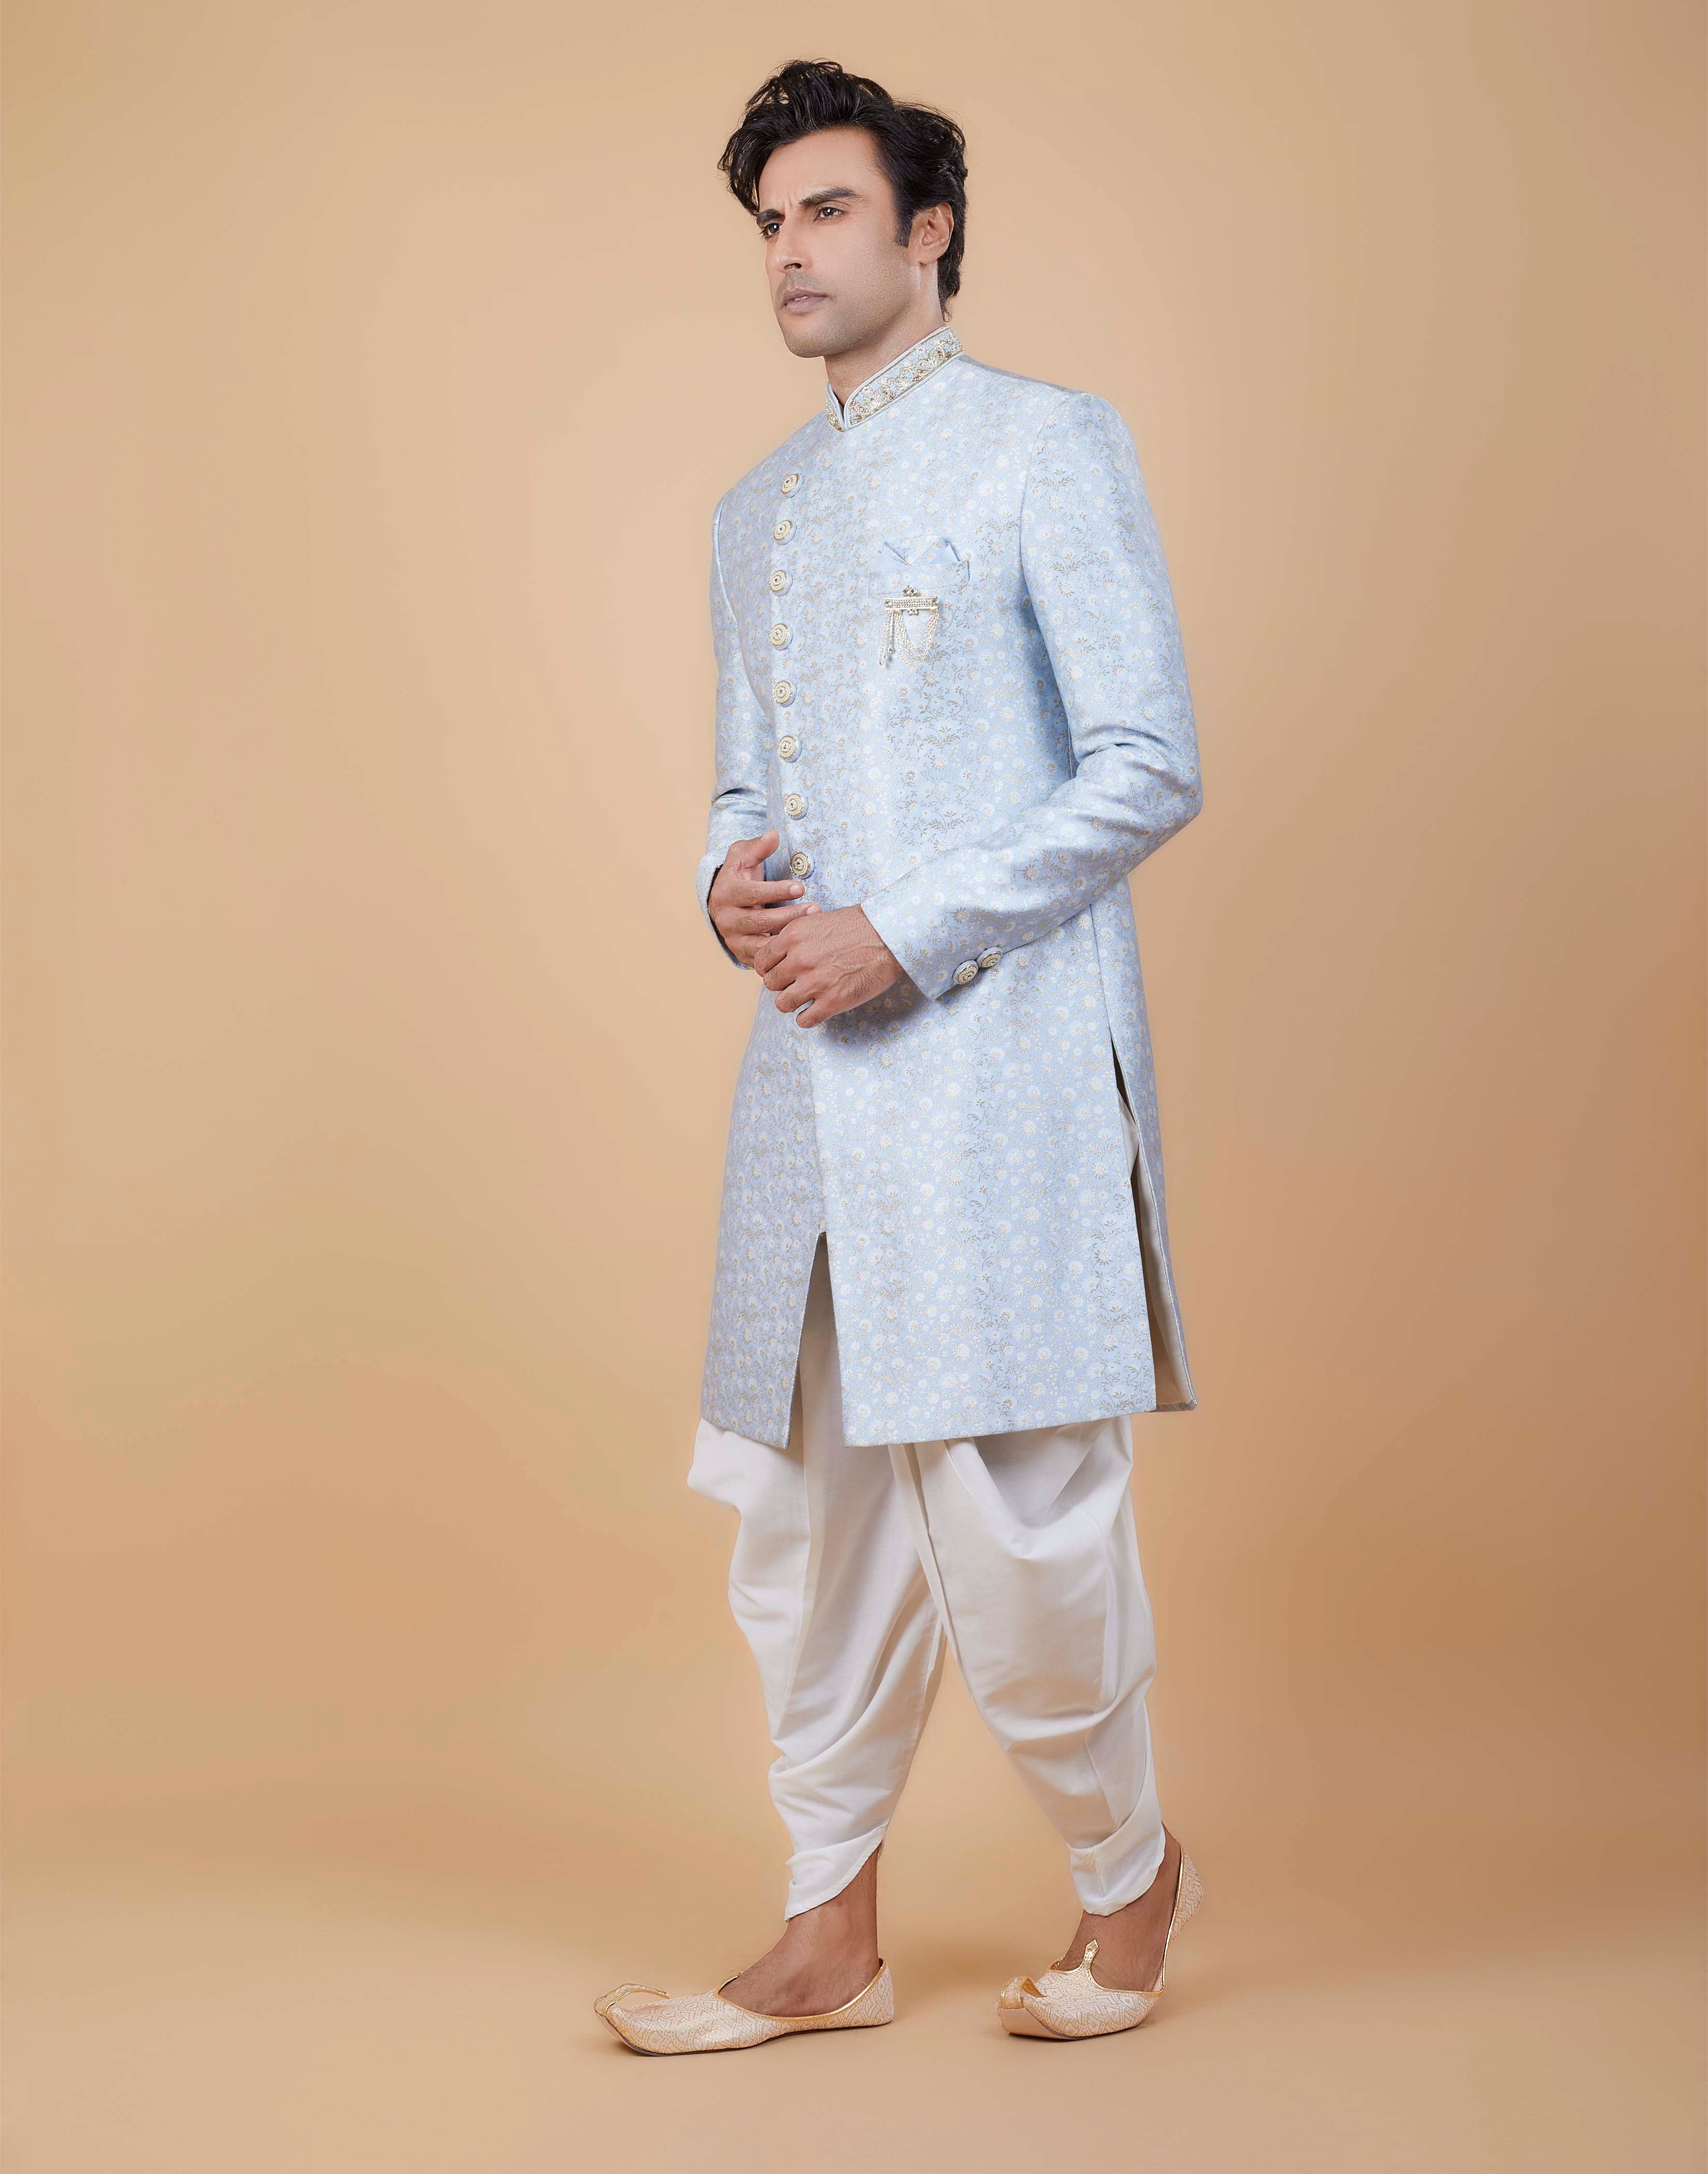 Buy Indian Sherwani For Men Online In Various Designs at Utsav Fashion